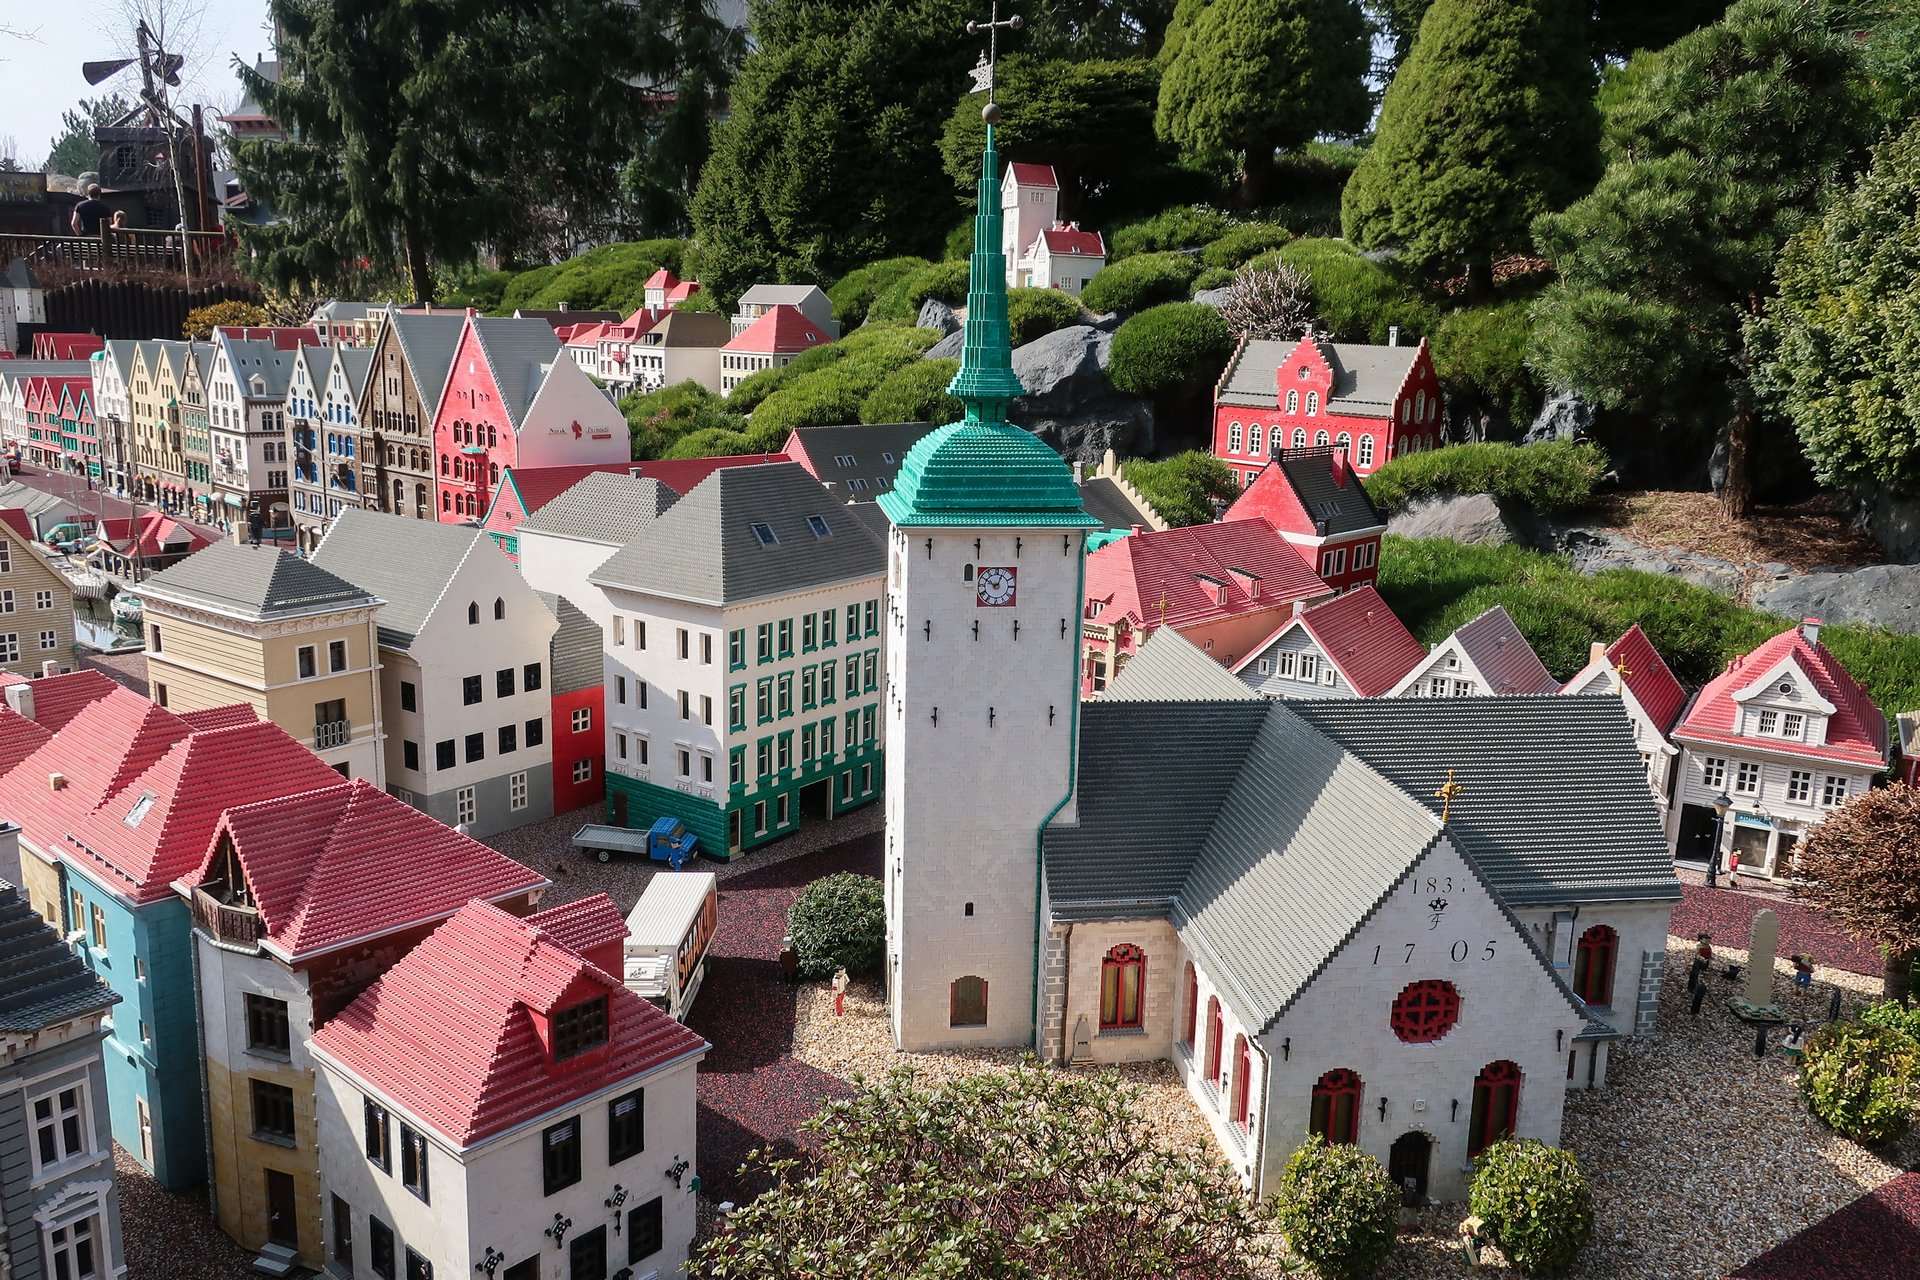 Макет европейского города в парке развлечений Леголенд в Дании